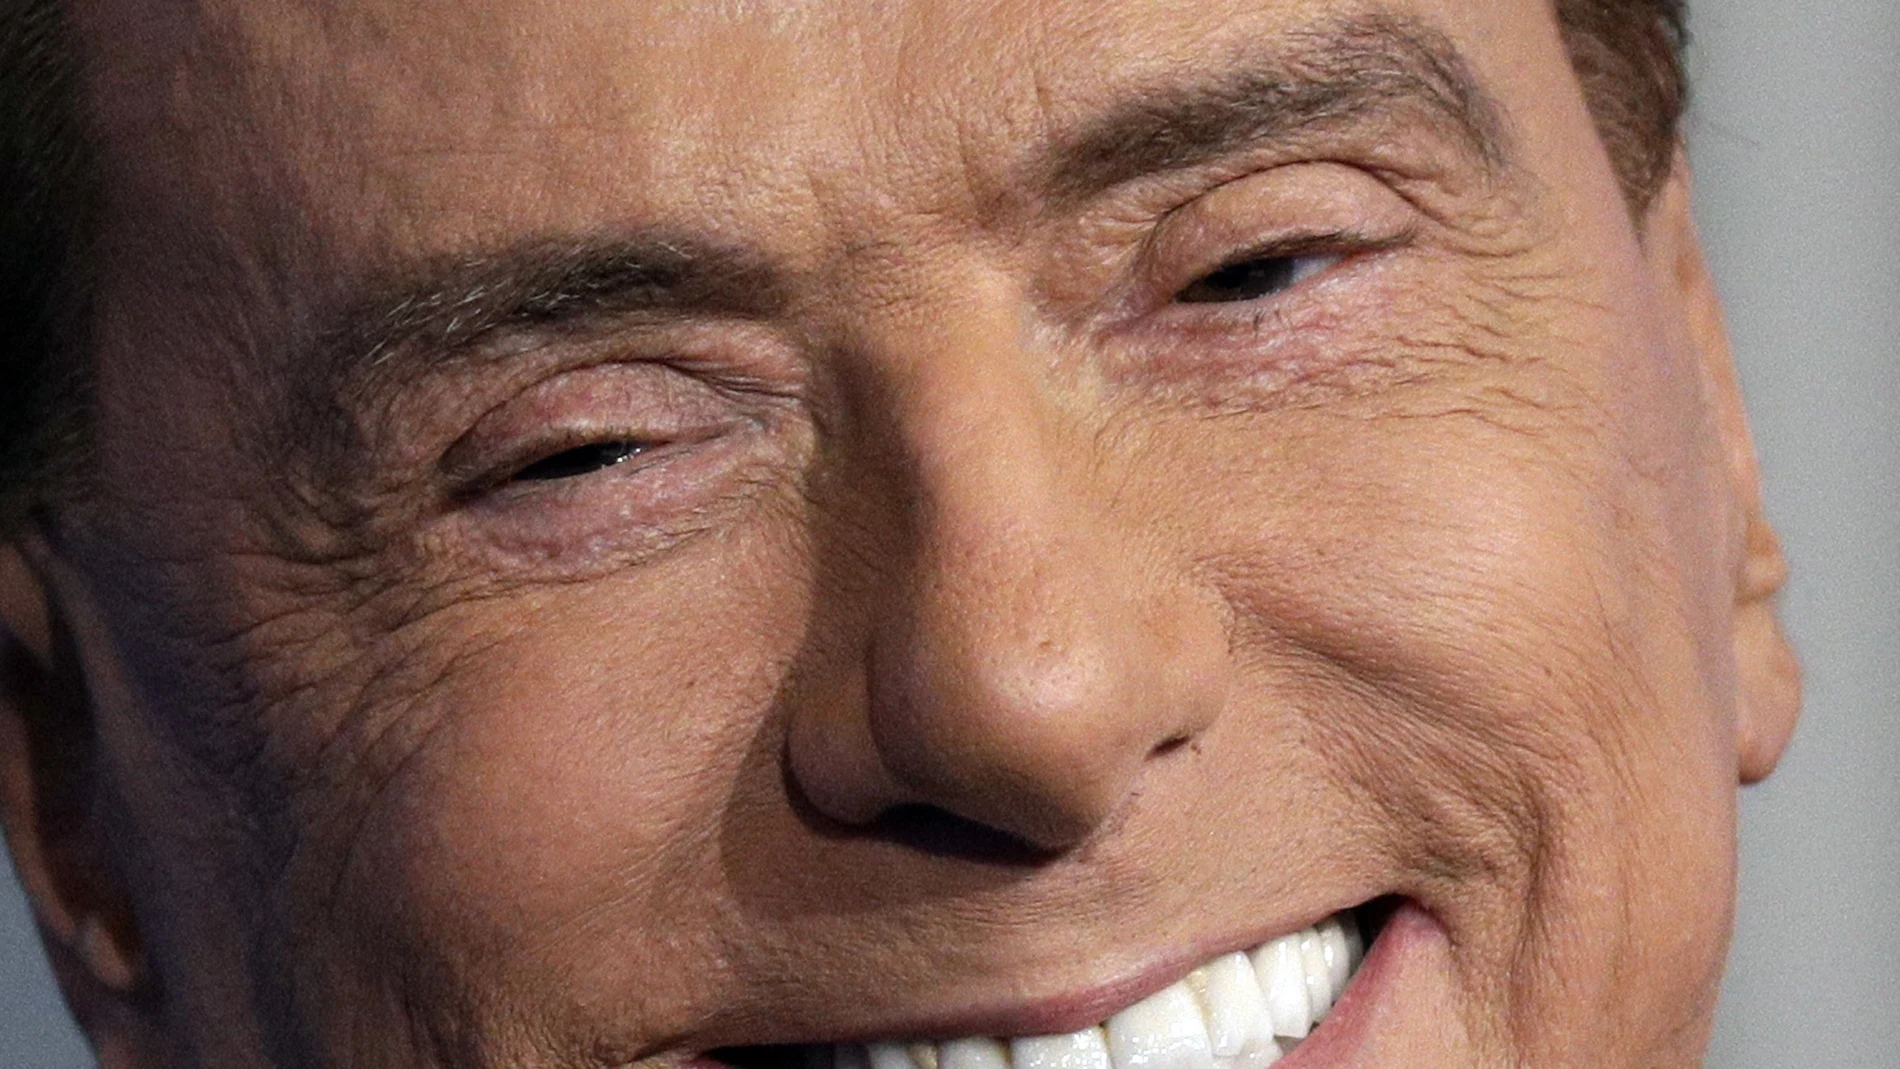  Italian former Premier and Forza Italia (Go Italy) party leader, Silvio Berlusconi, smiles during the recording of the Italian state television RAI, Porta a Porta 